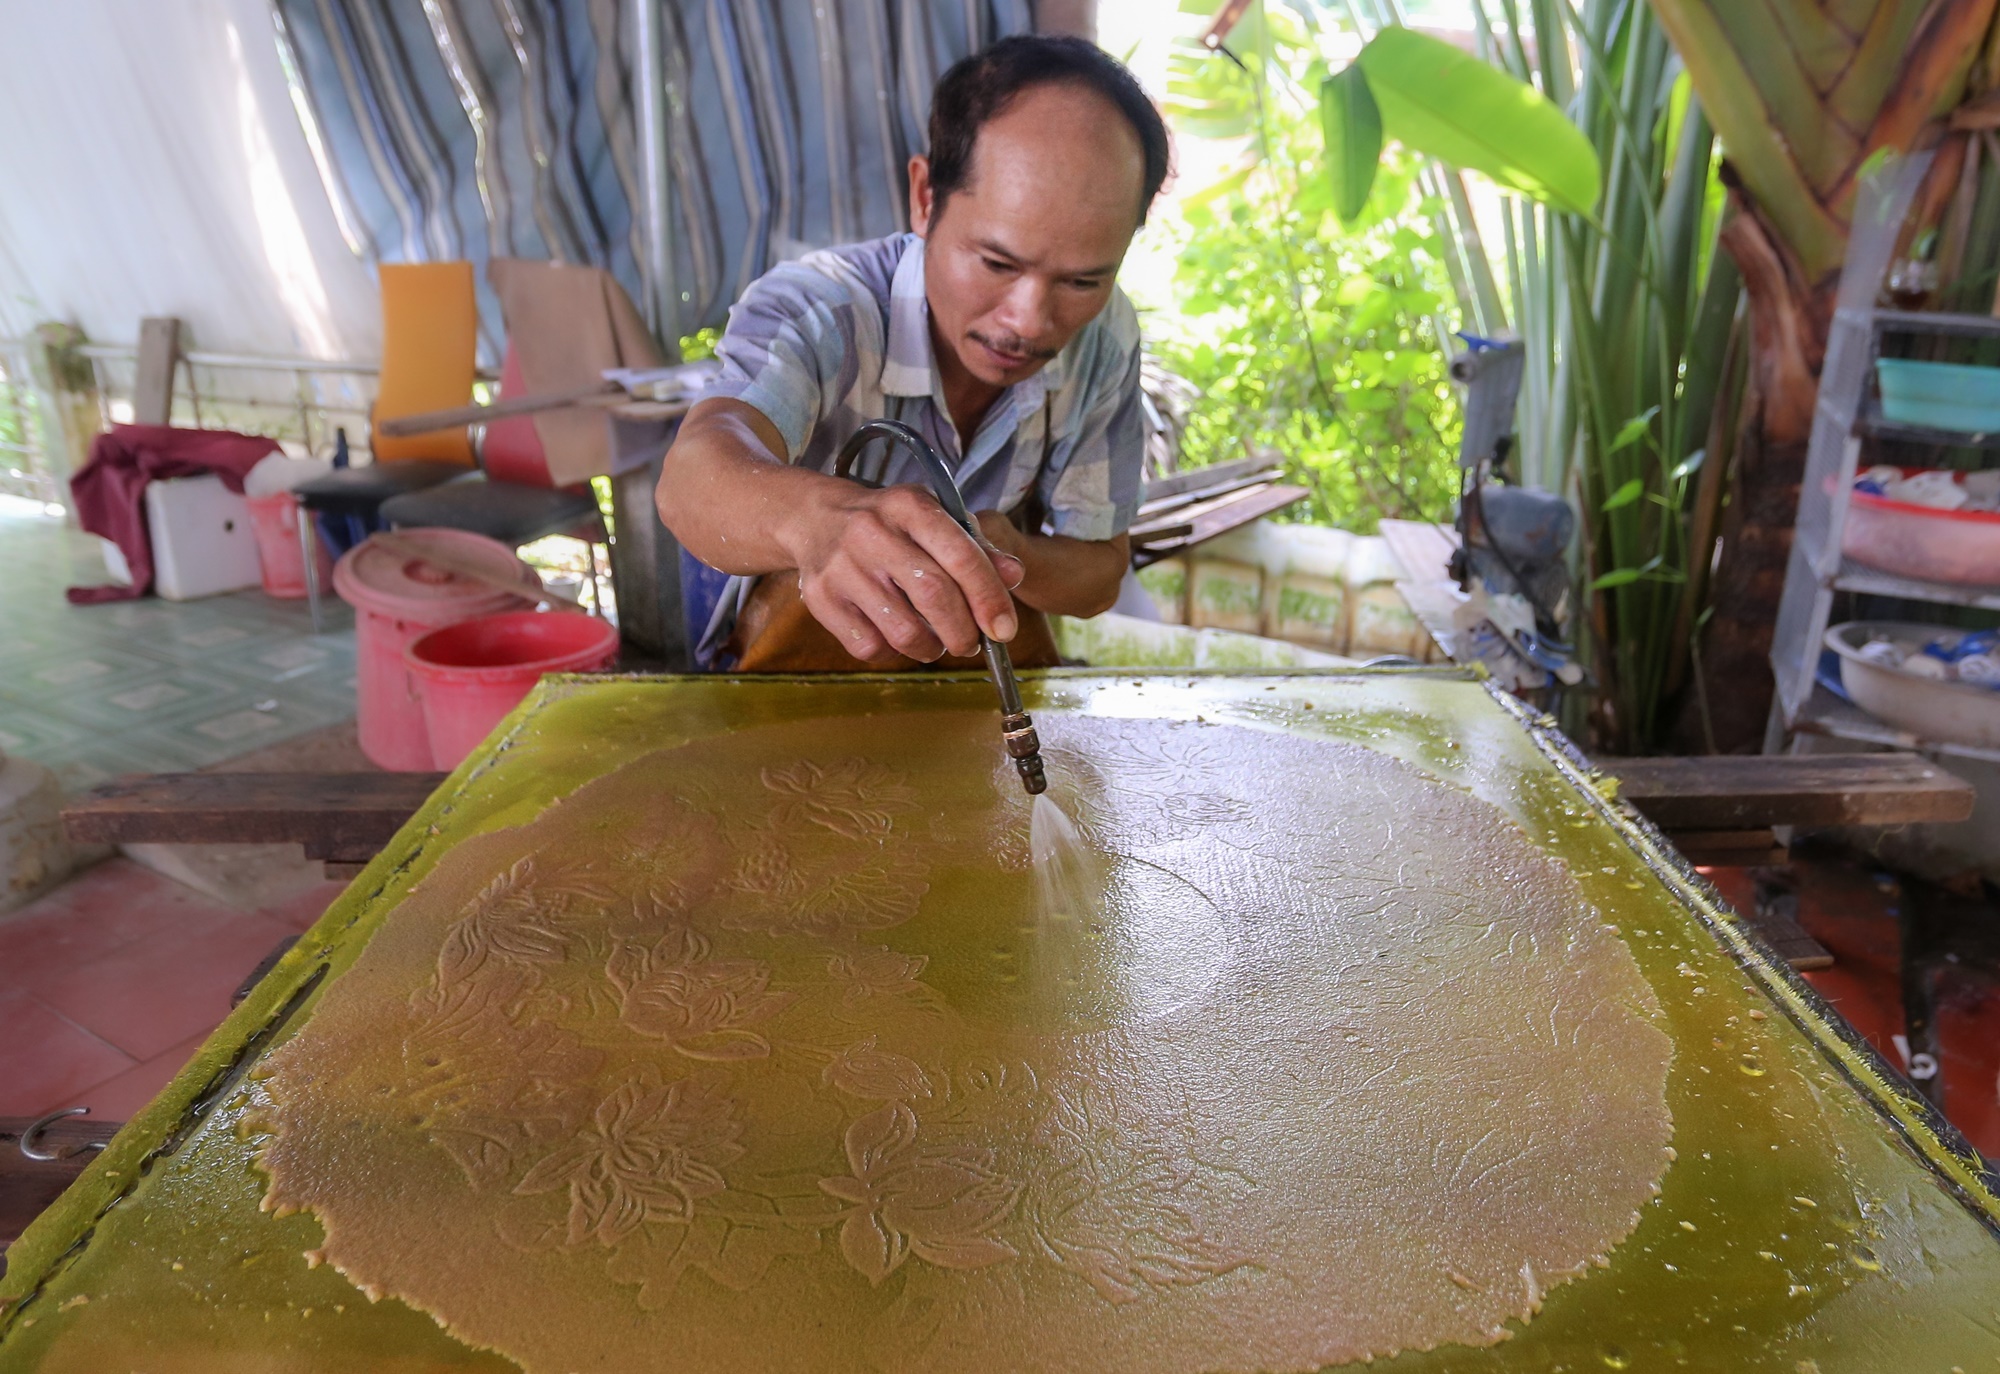 Dùng bẹ dừa làm giấy, xịt nước để vẽ tranh 'xuyên sáng' bán với giá hàng chục triệu đồng - Ảnh 11.